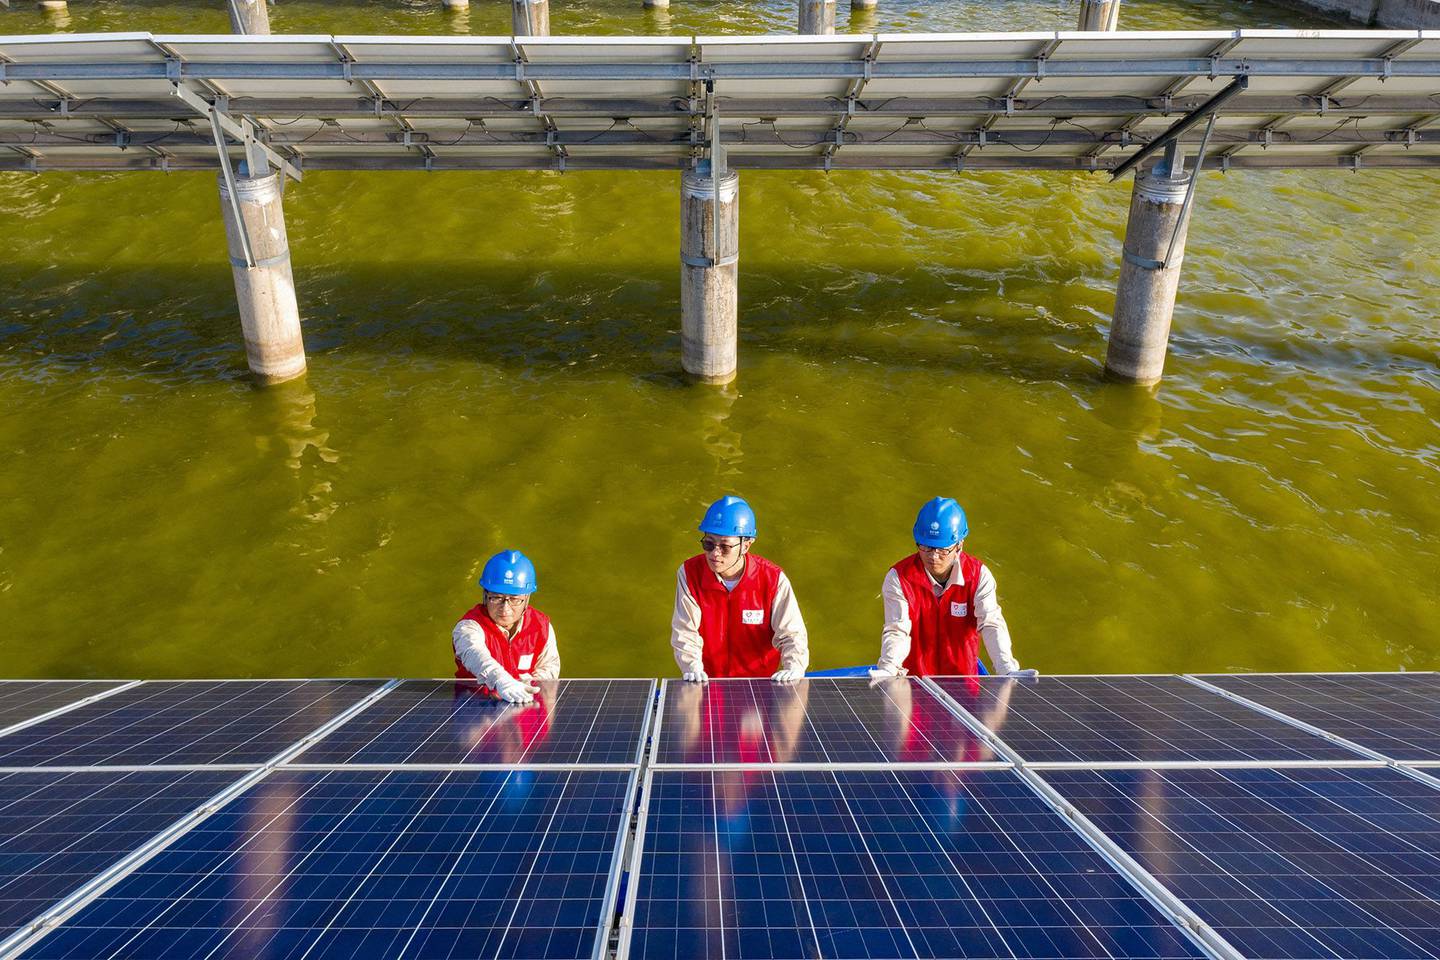 Trabajadores eléctricos revisando los paneles solares de una central fotovoltaica construida en un estanque de peces en Haian, en la provincia china de Jiangsu.  Fotógrafo: STR/AFP/Getty Imagesdfd